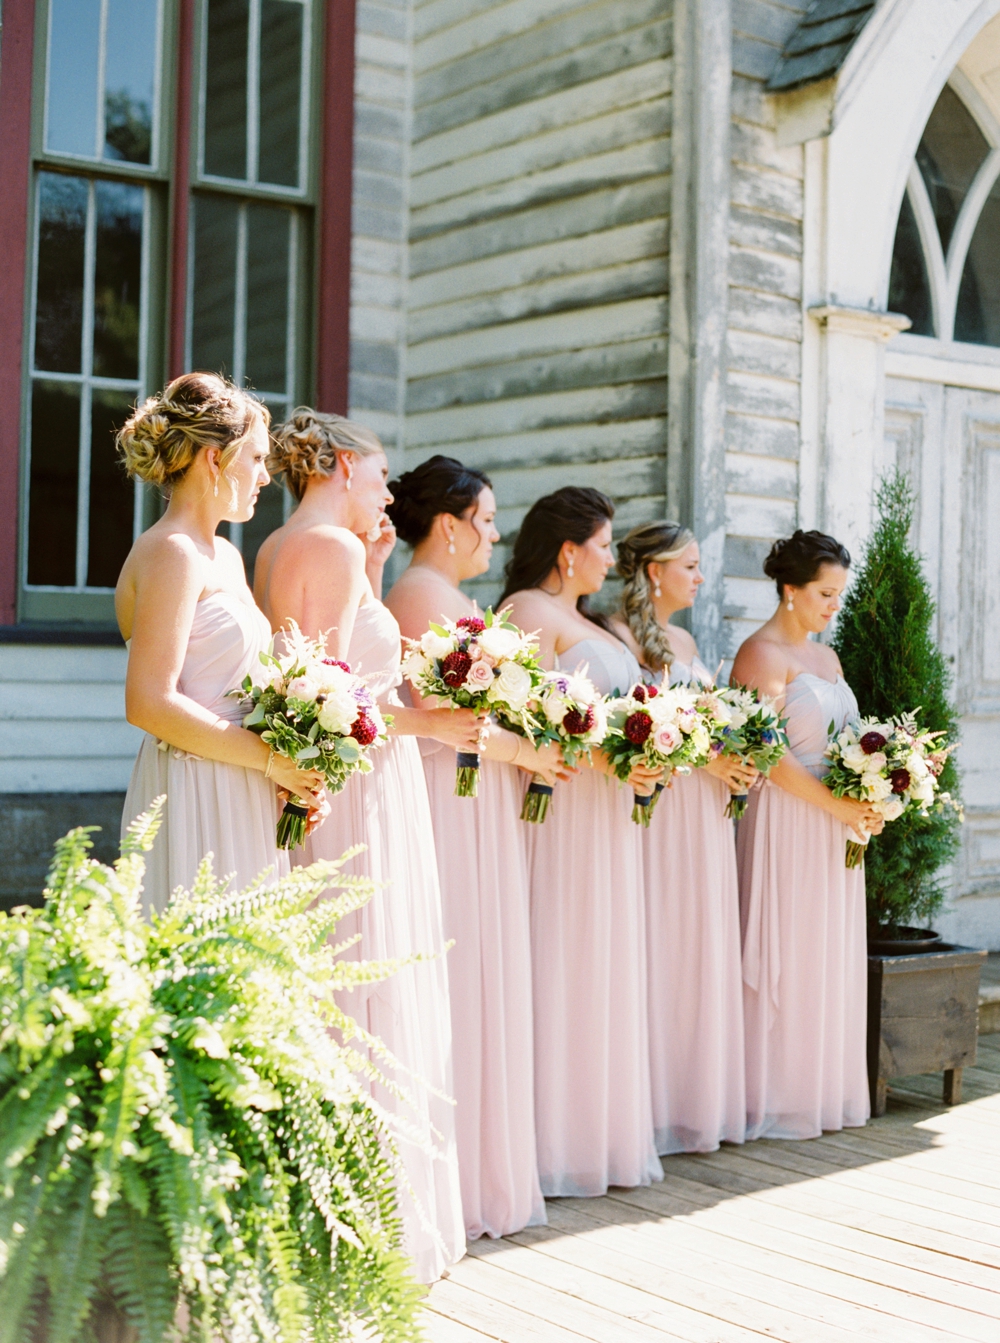 Calgary Wedding Photographers | Toronto Wedding Photography | Barn Wedding | Elegant Rustic Wedding